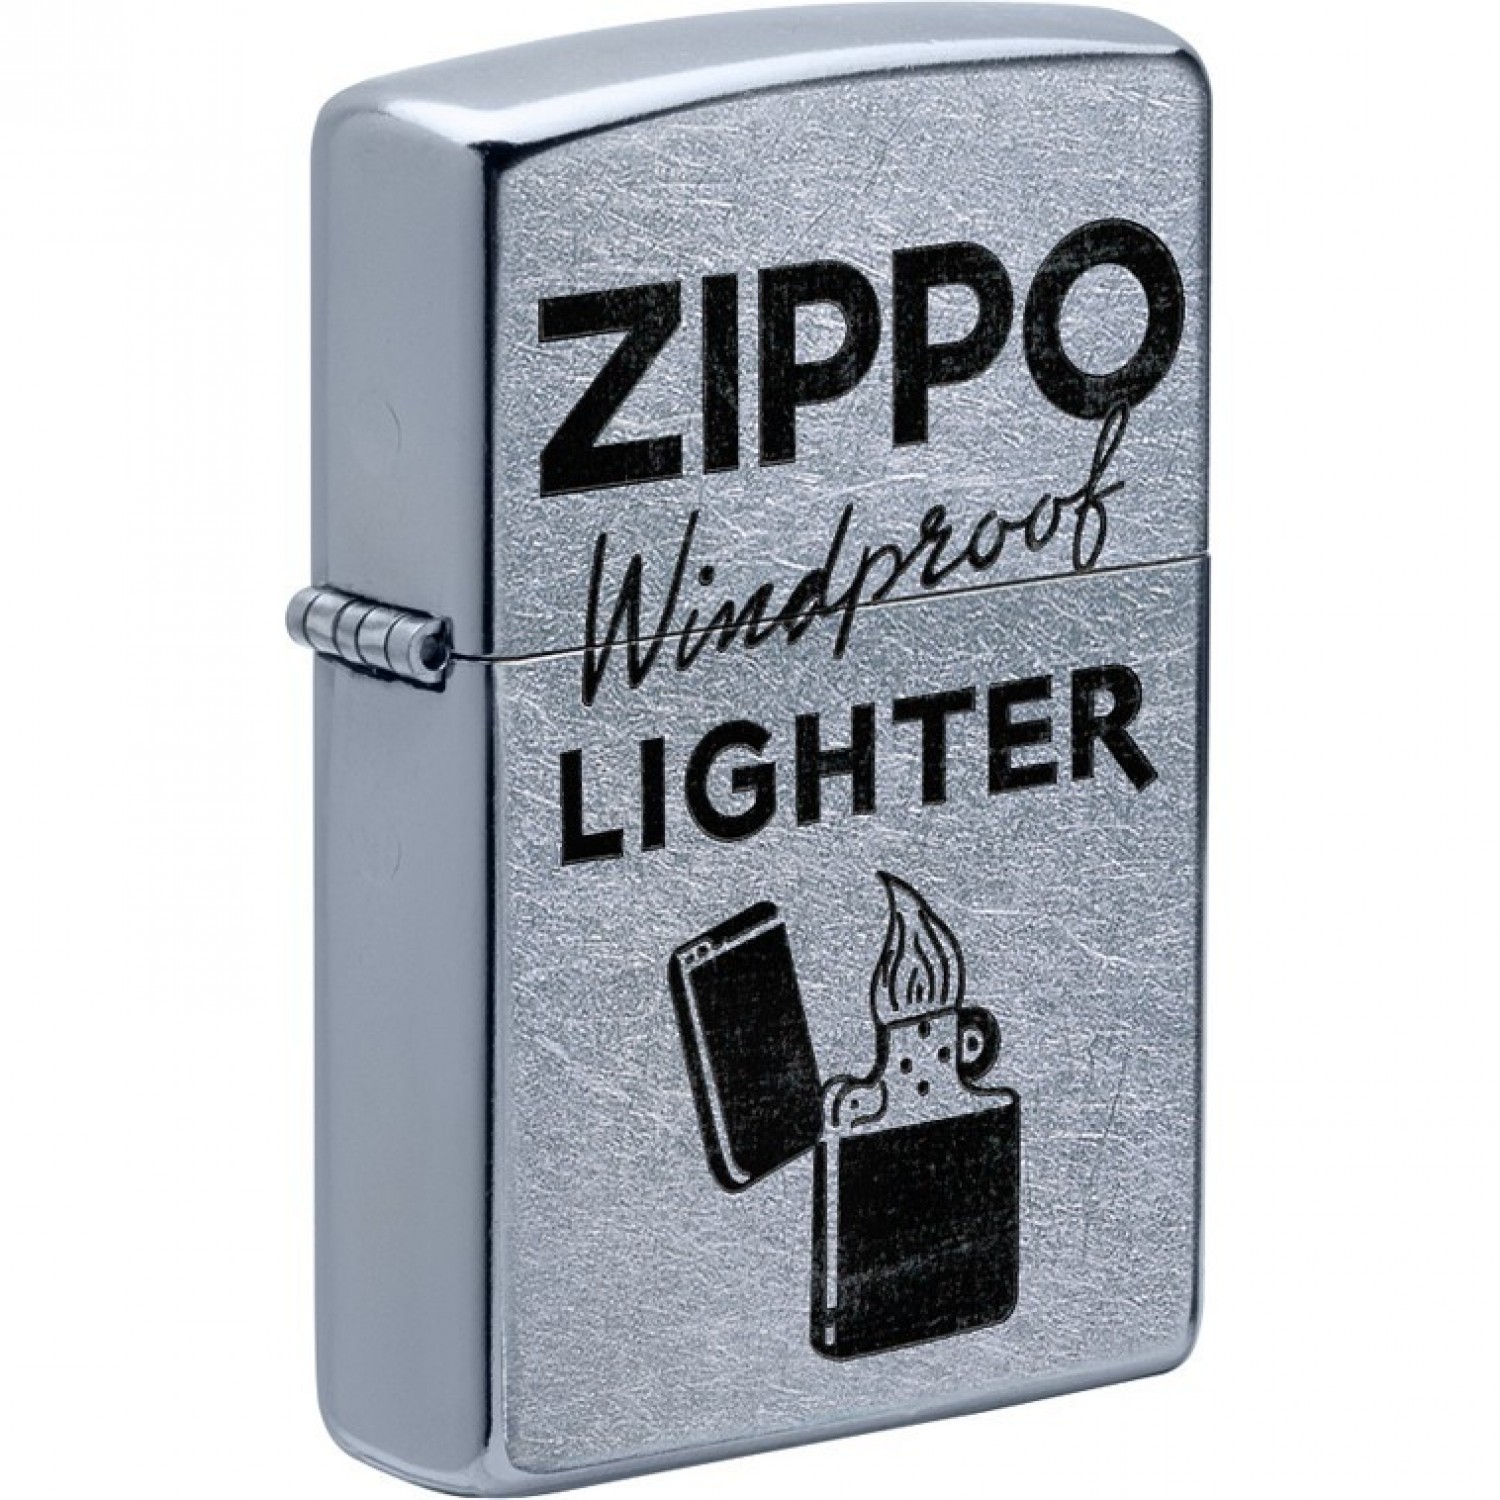 zippo windproof lighter - タバコグッズ